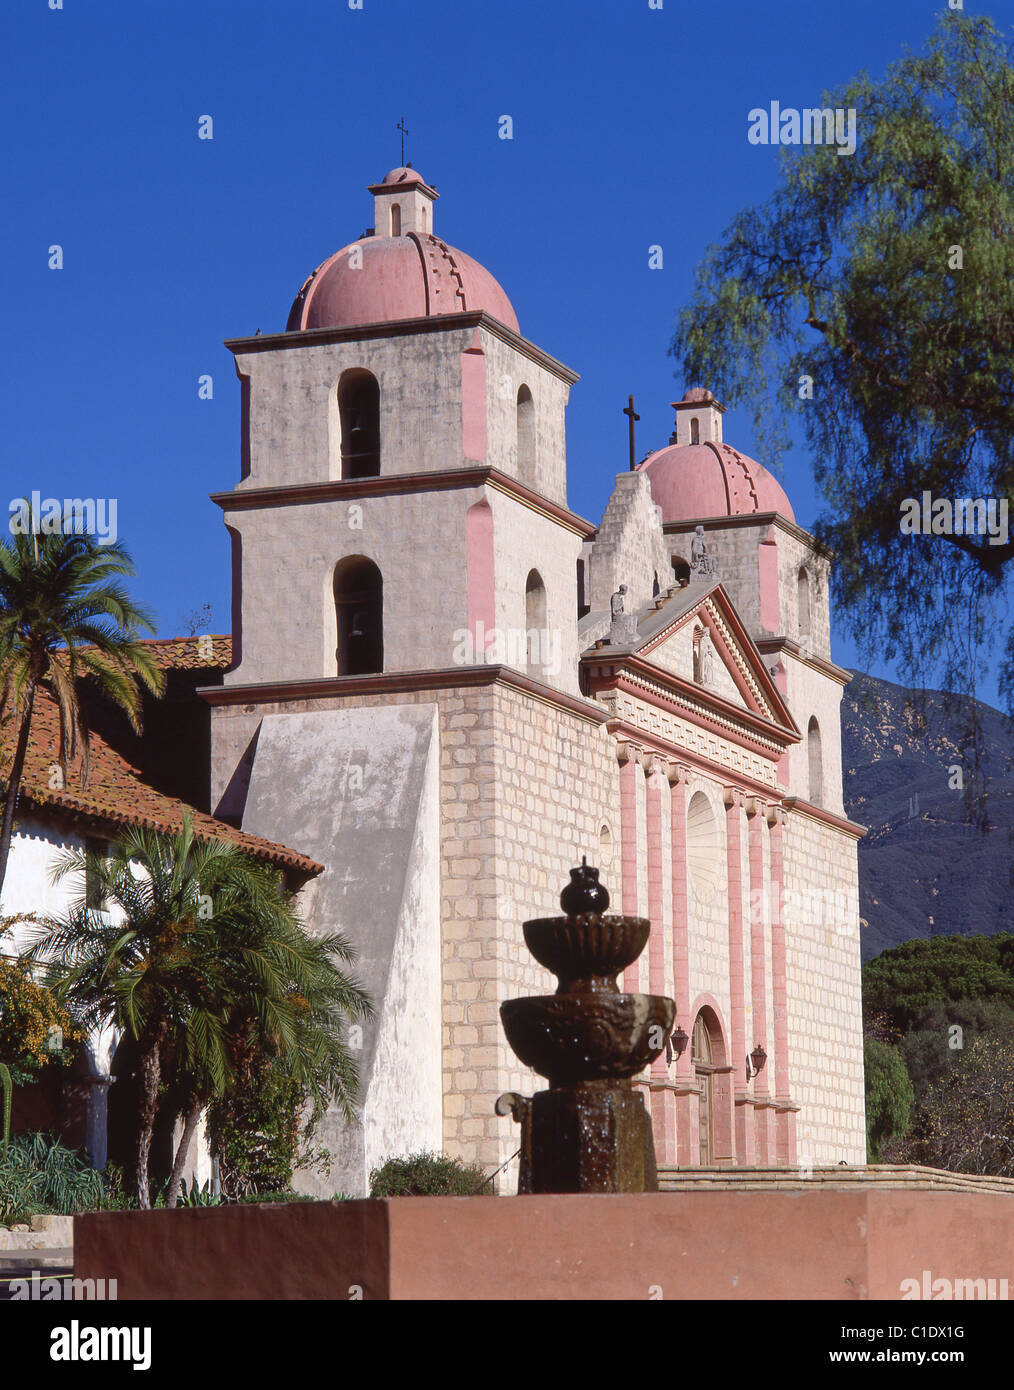 Die Kapelle und der Brunnen in Santa Barbara Mission, Santa Barbara, Kalifornien, Vereinigte Staaten von Amerika Stockfoto